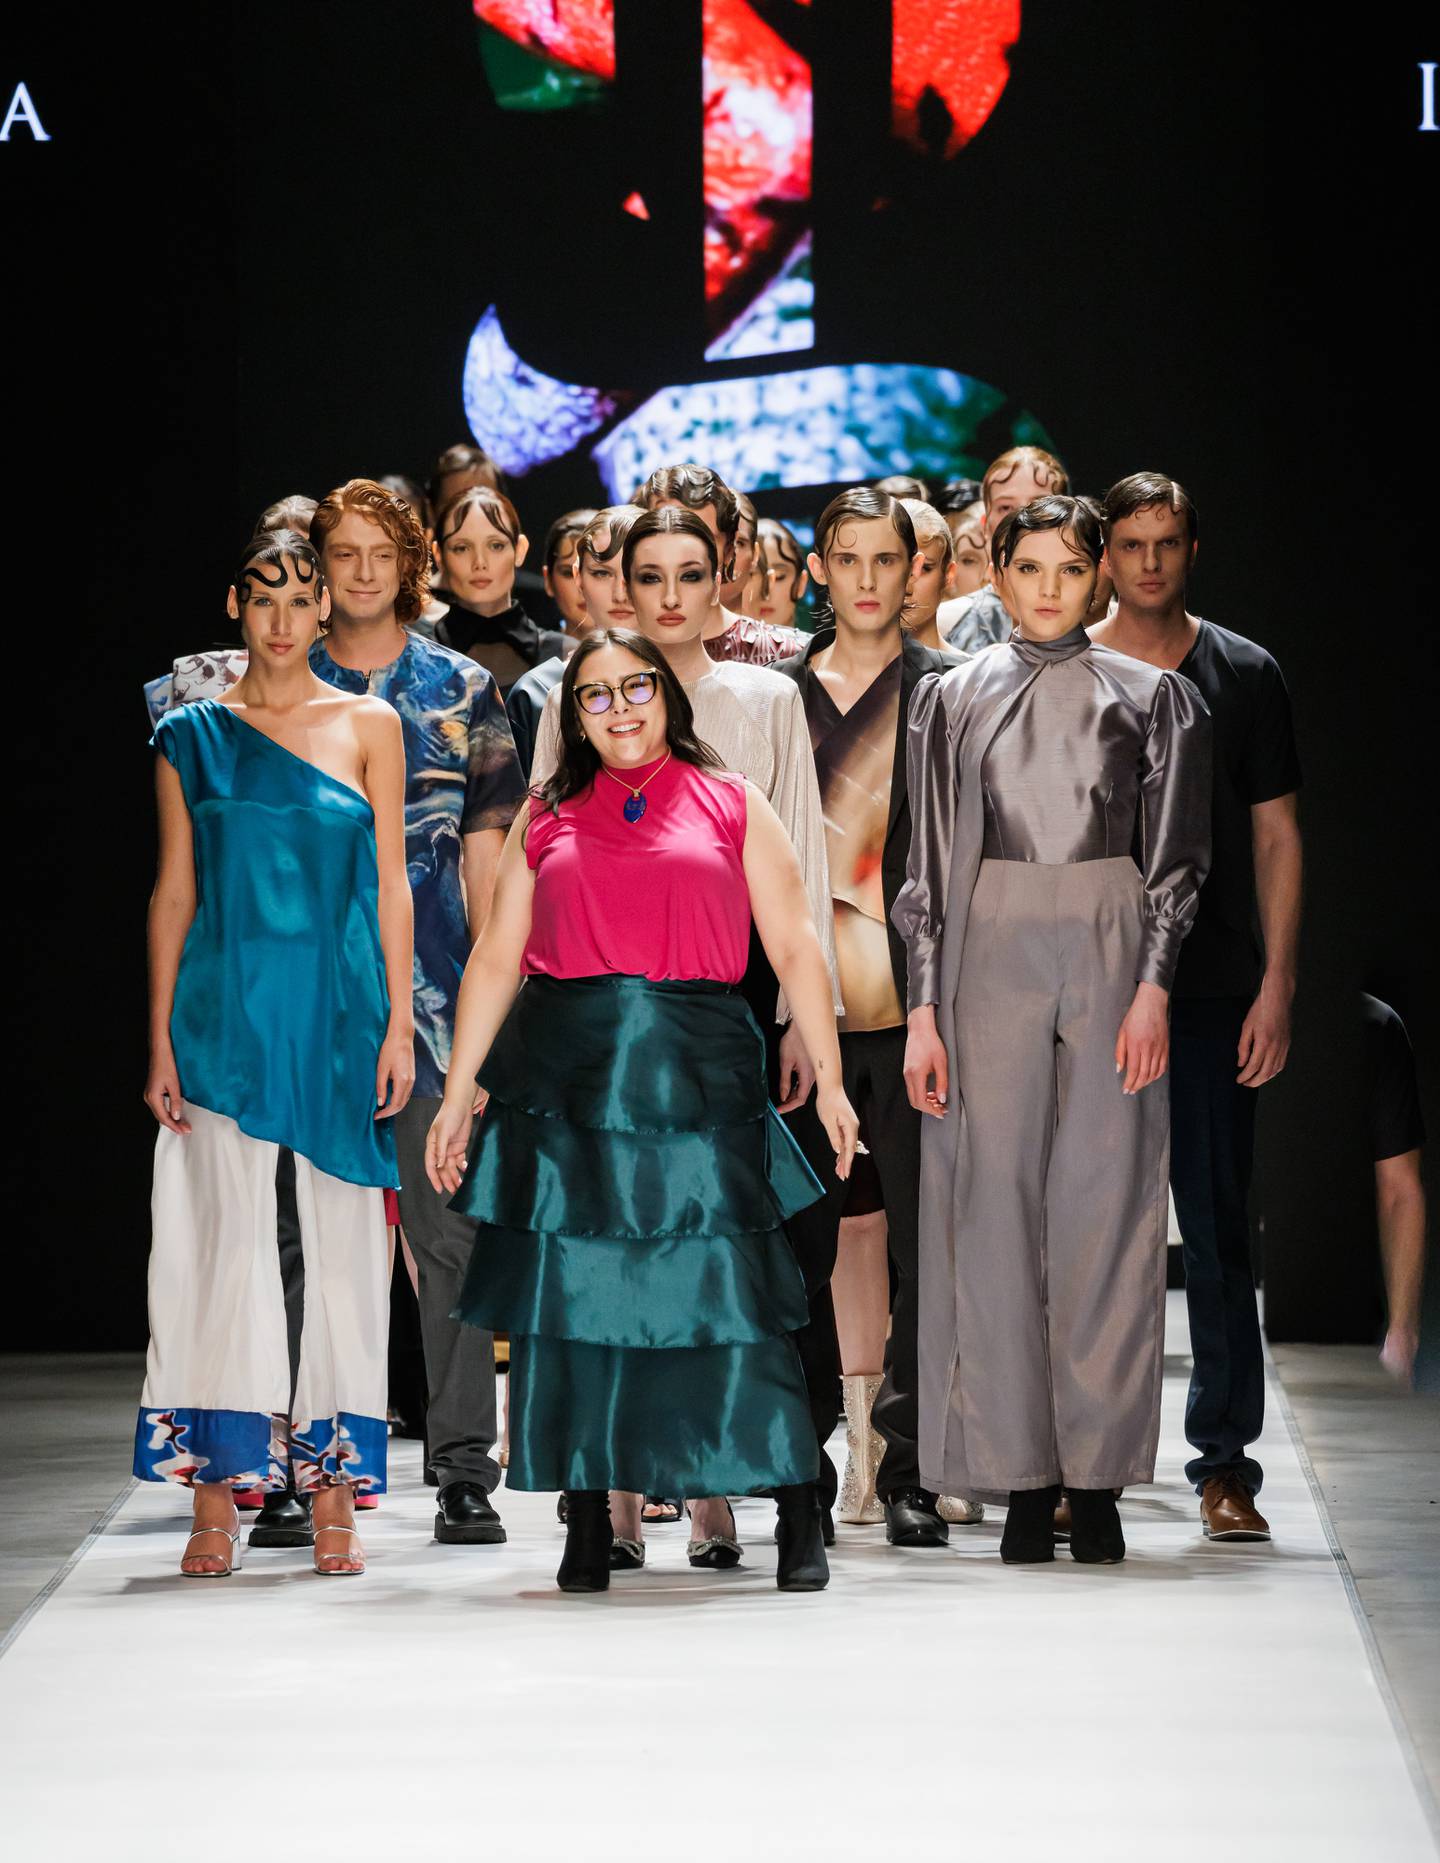 Ivonne Garita presentó su colección en la semana de la moda de Moscú y recibió una gran acogida por la pasarela en la que participaron 30 modelos. Foto: CRFW para LN